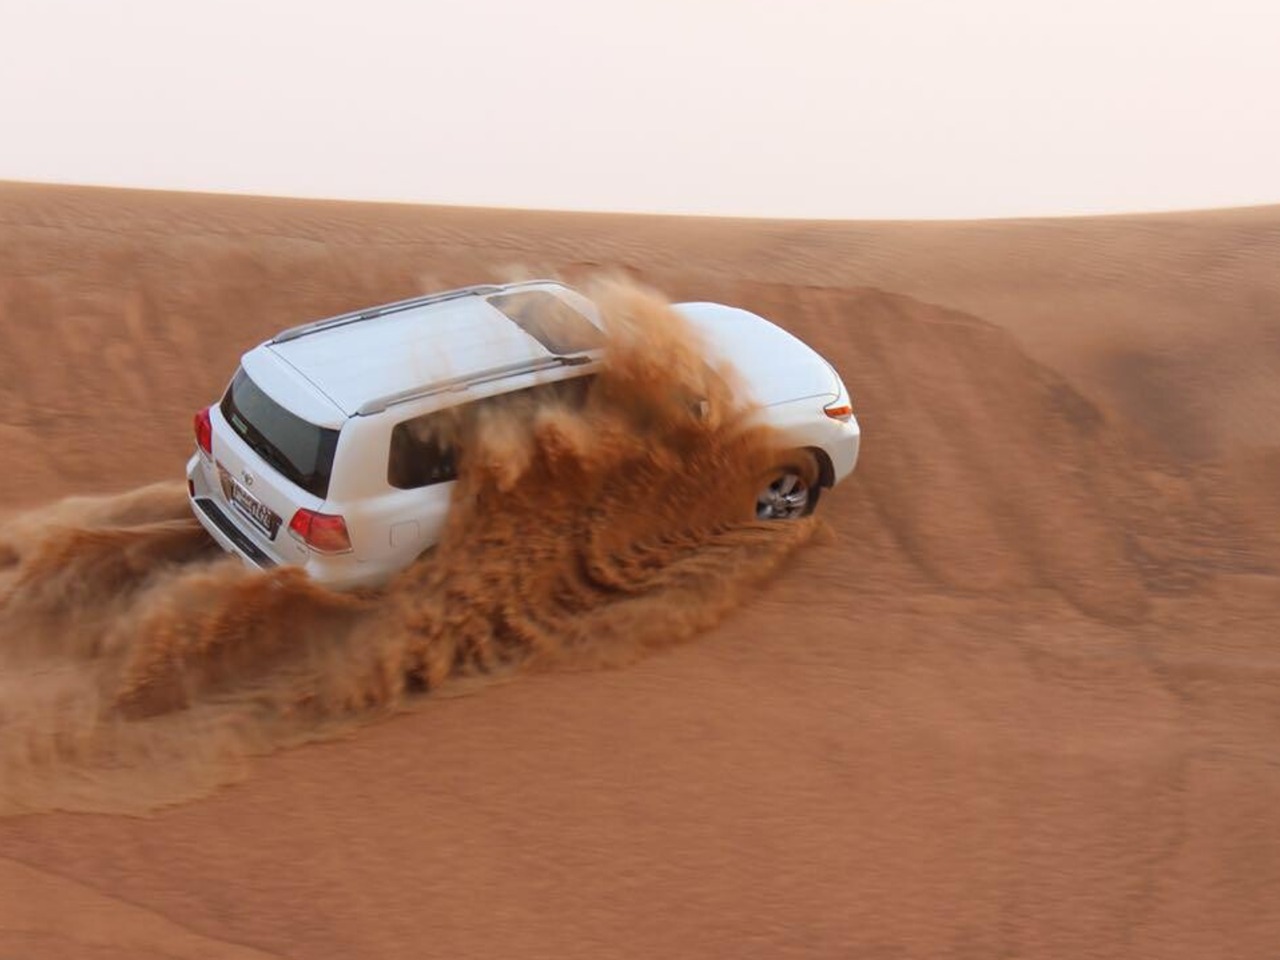 Пустынное сафари — в топе развлечений ОАЭ! | Цена 375$, отзывы, описание экскурсии